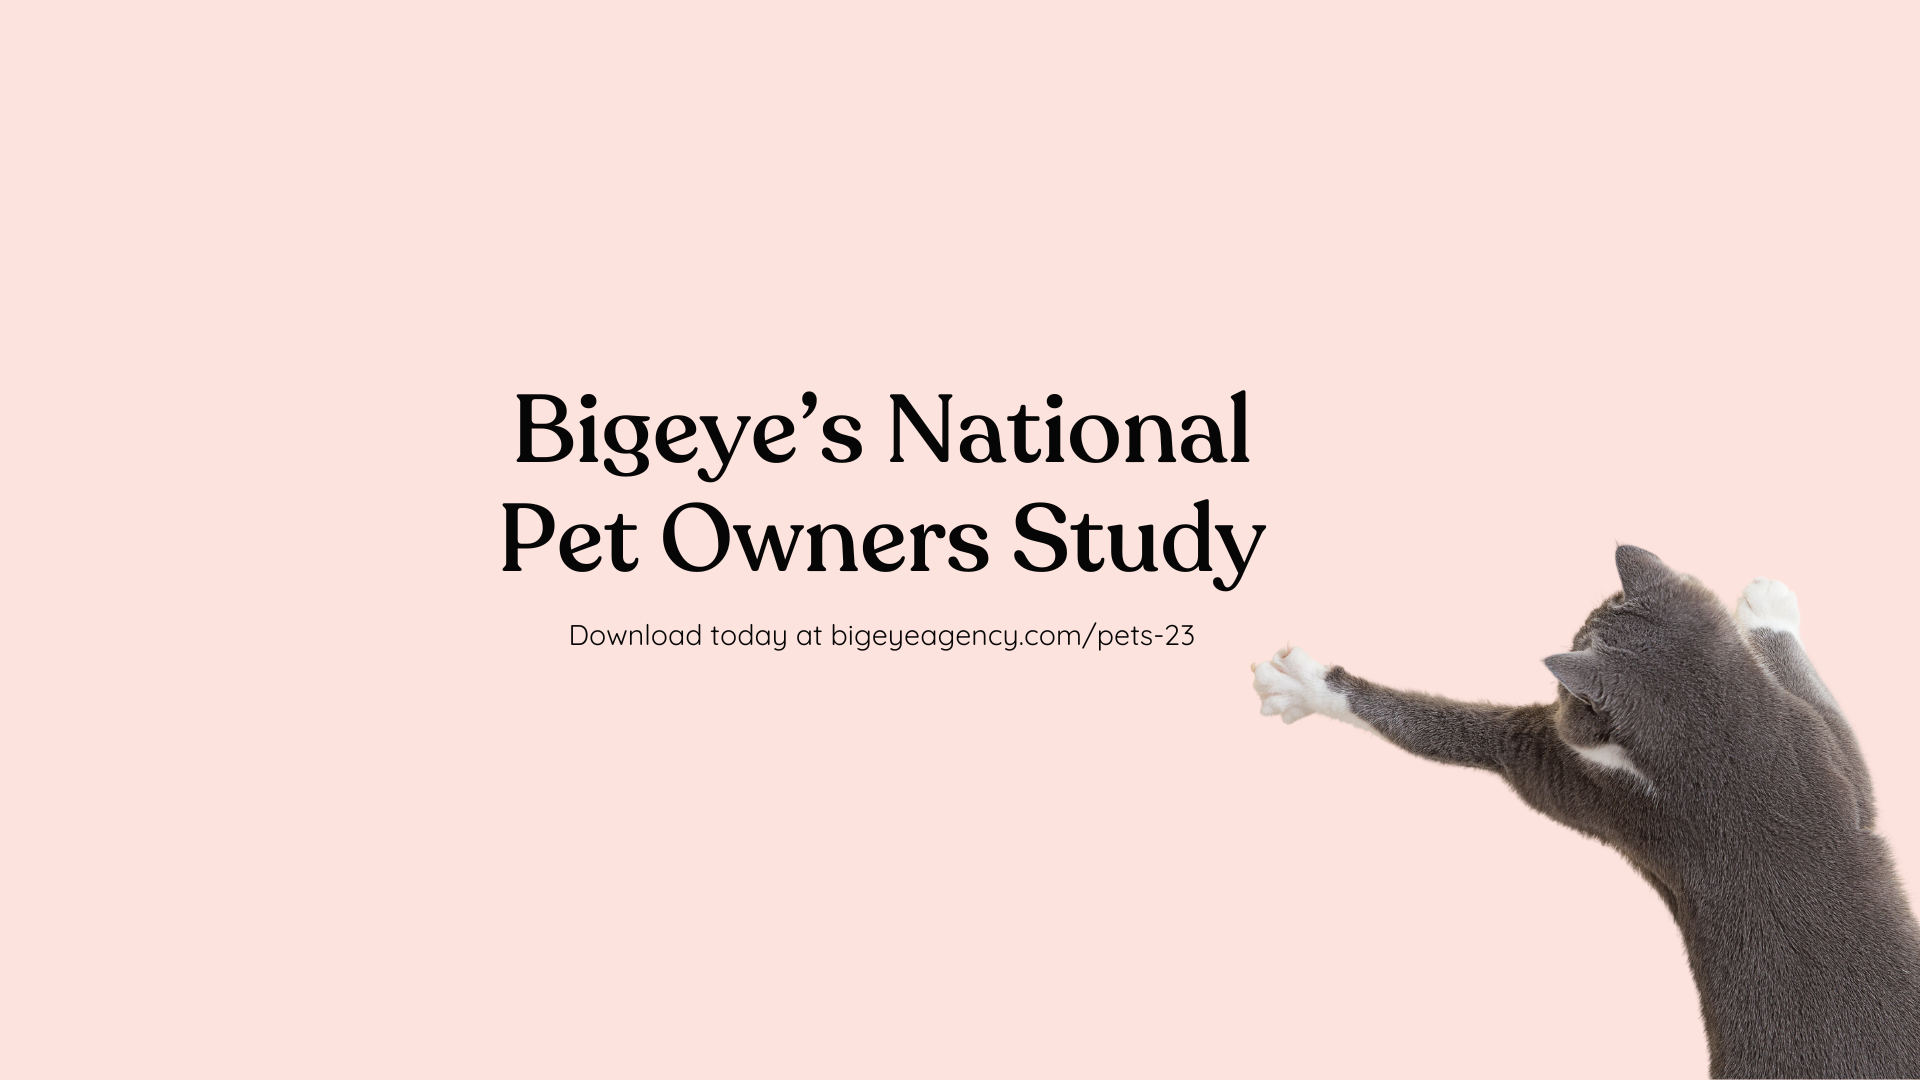 Bigeye pet study linked in LinkedIn Article Cover